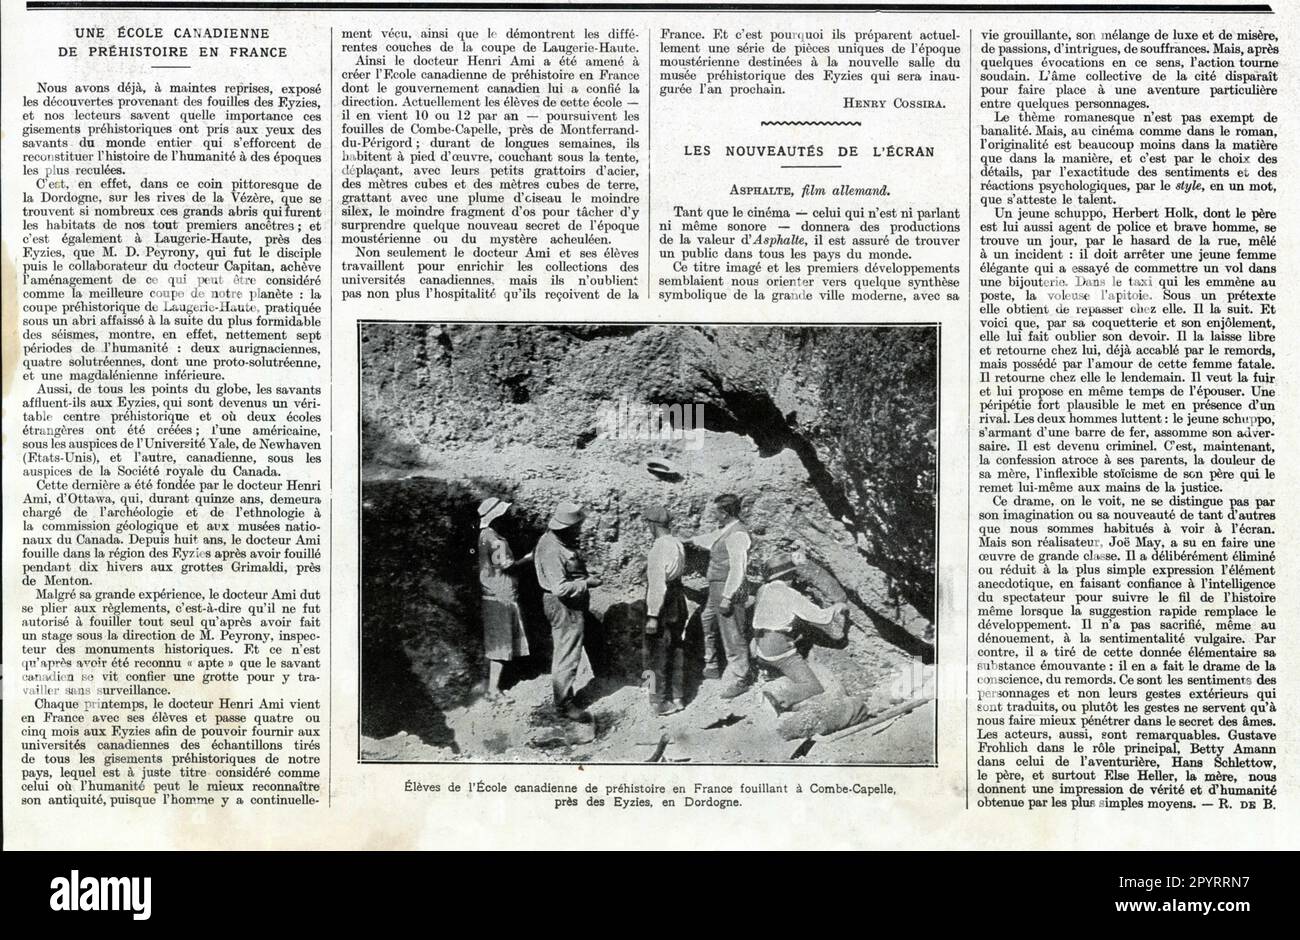 Deux articles de presse anciens, UNE ECOLE CANADIENNE DE PRÉHISTOIRE EN FRANCE et LES NOUVEAUTÉS DE L'ECRAN. 1929 Stock Photo